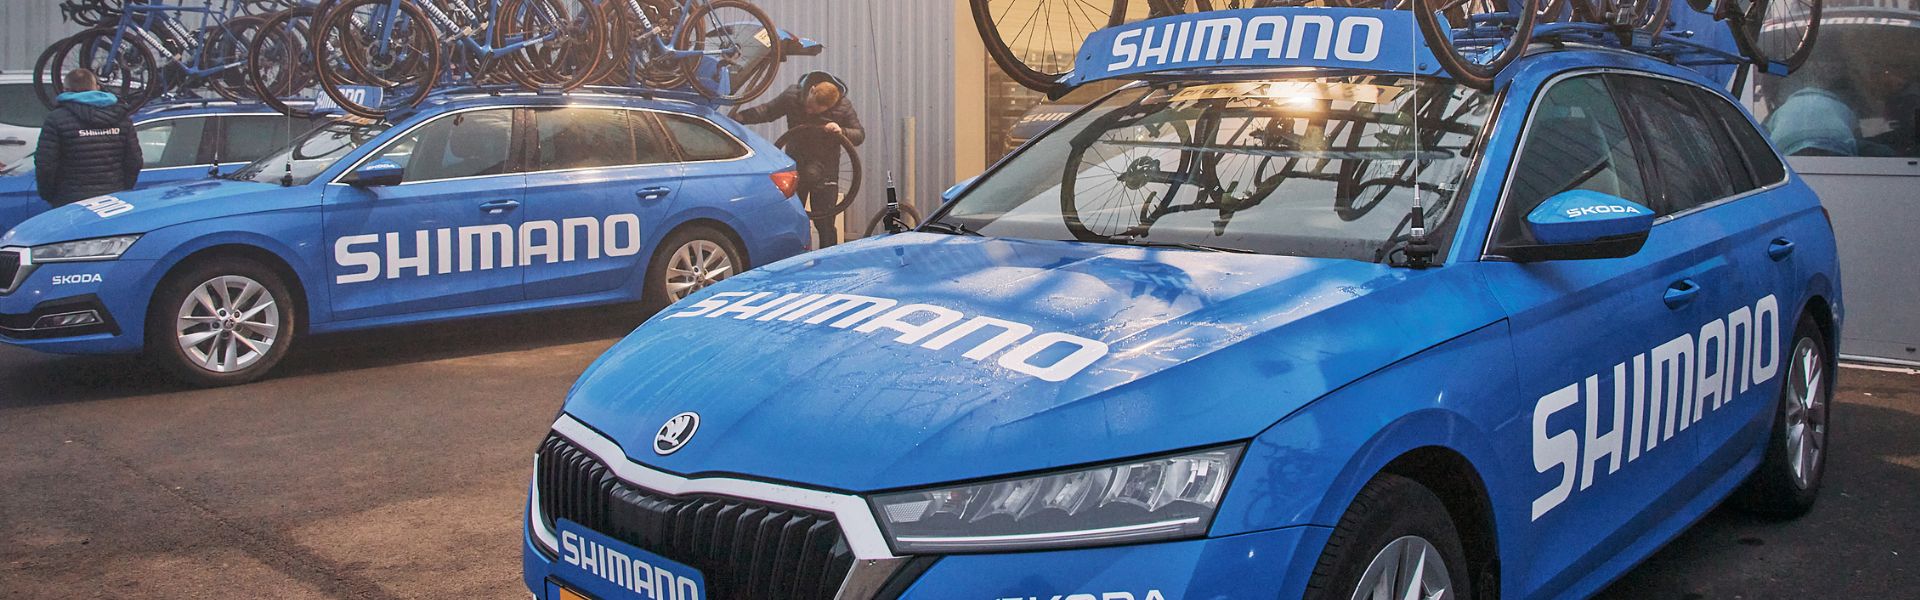 Ciência Humana da Shimano: Paris-Roubaix de Moto